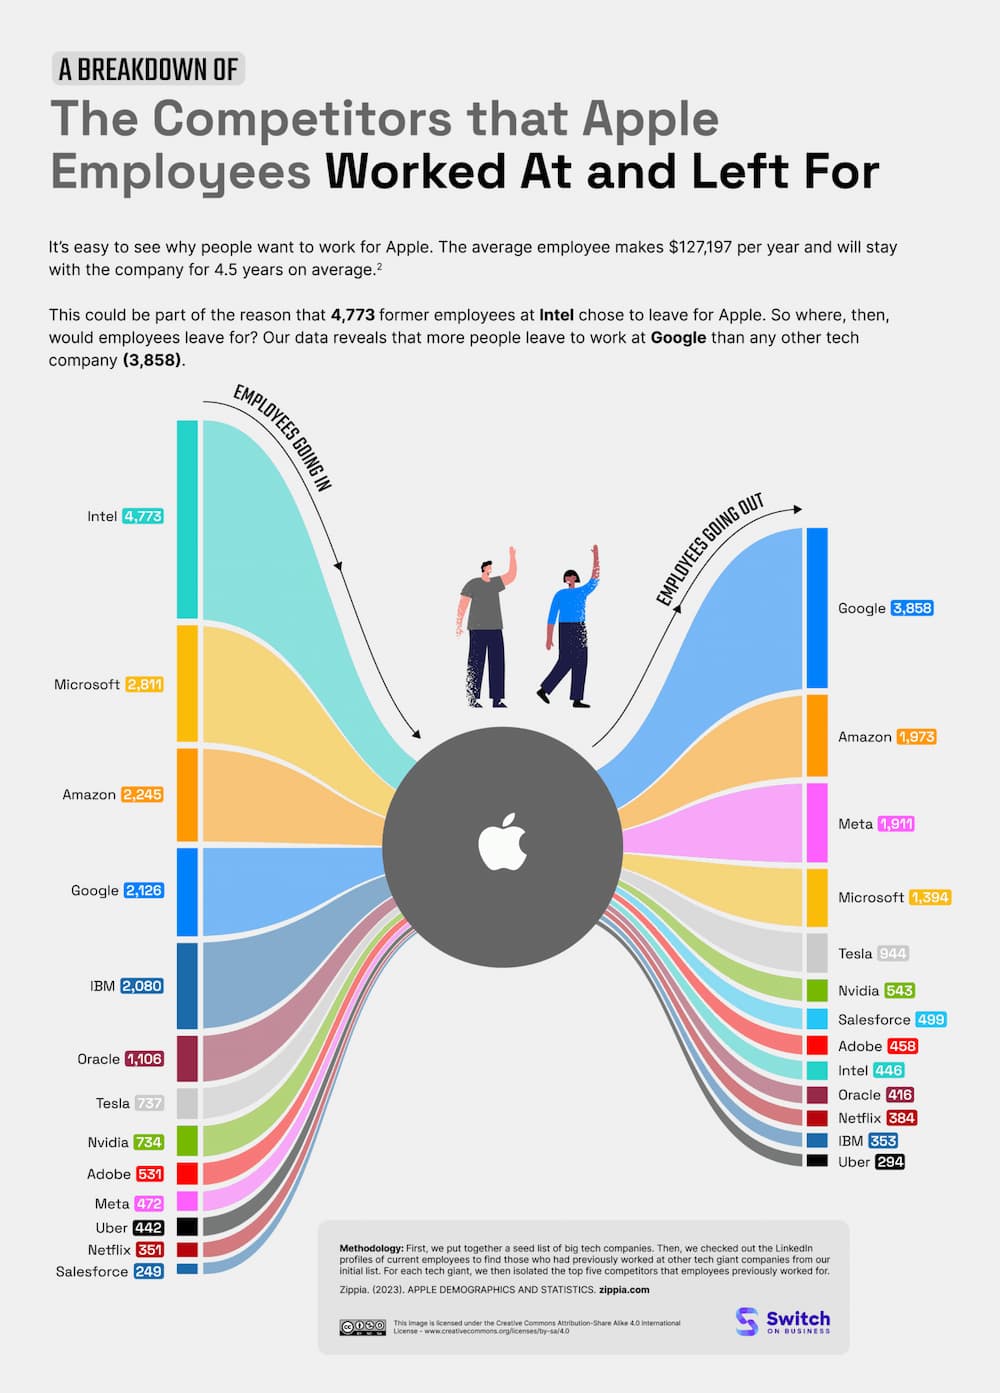 蘋果員工離職後最愛去哪間公司？調查10大排行Google第一名1